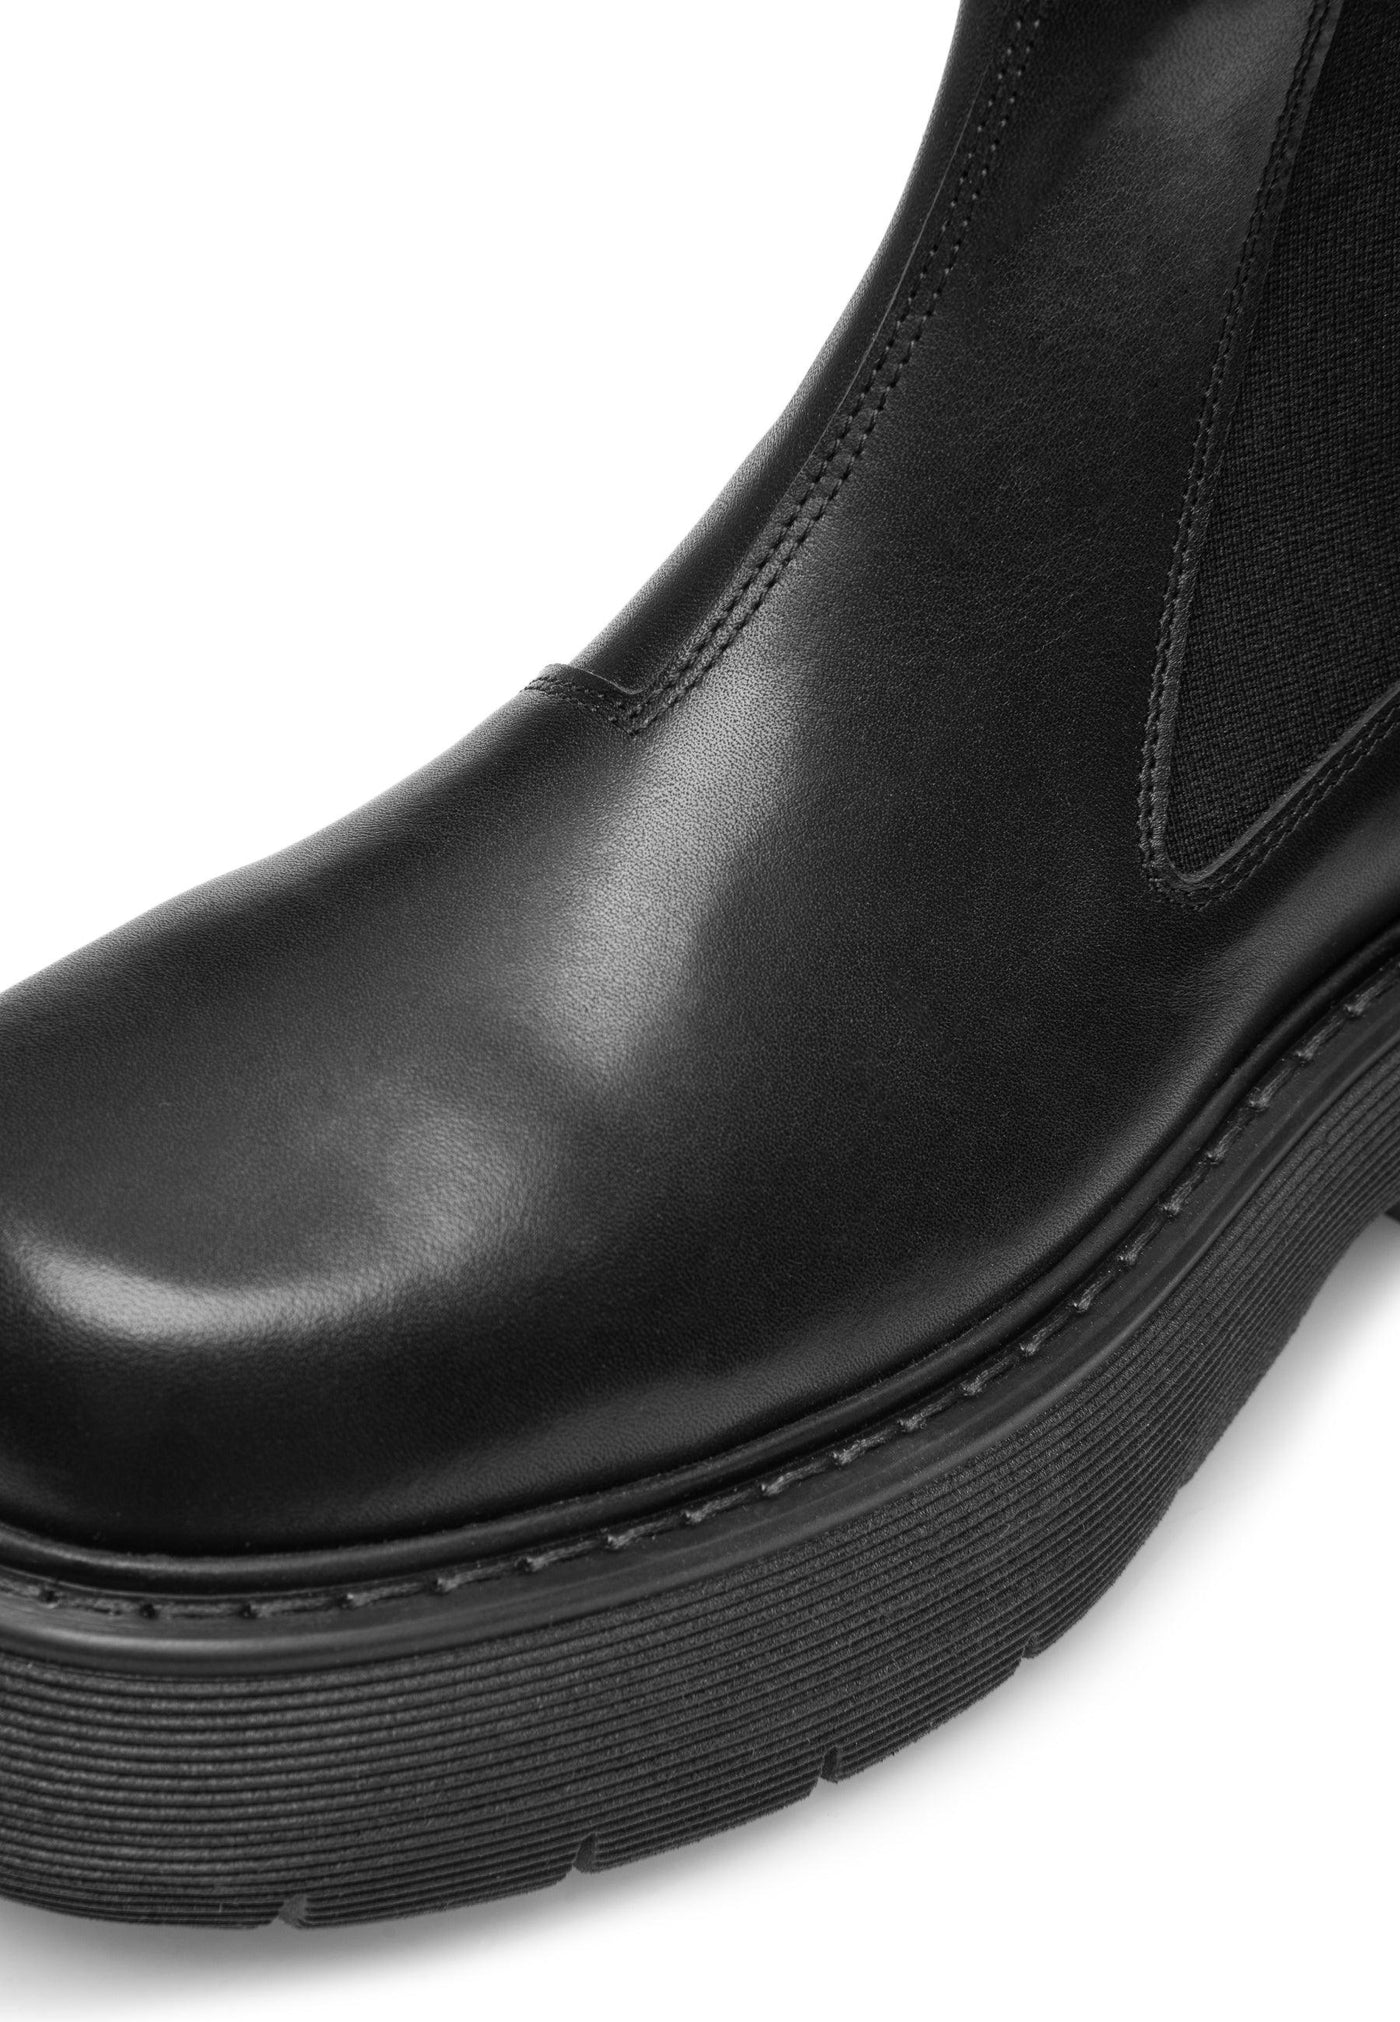 LÄST Ella - Leather - Black Ankle Boots Black